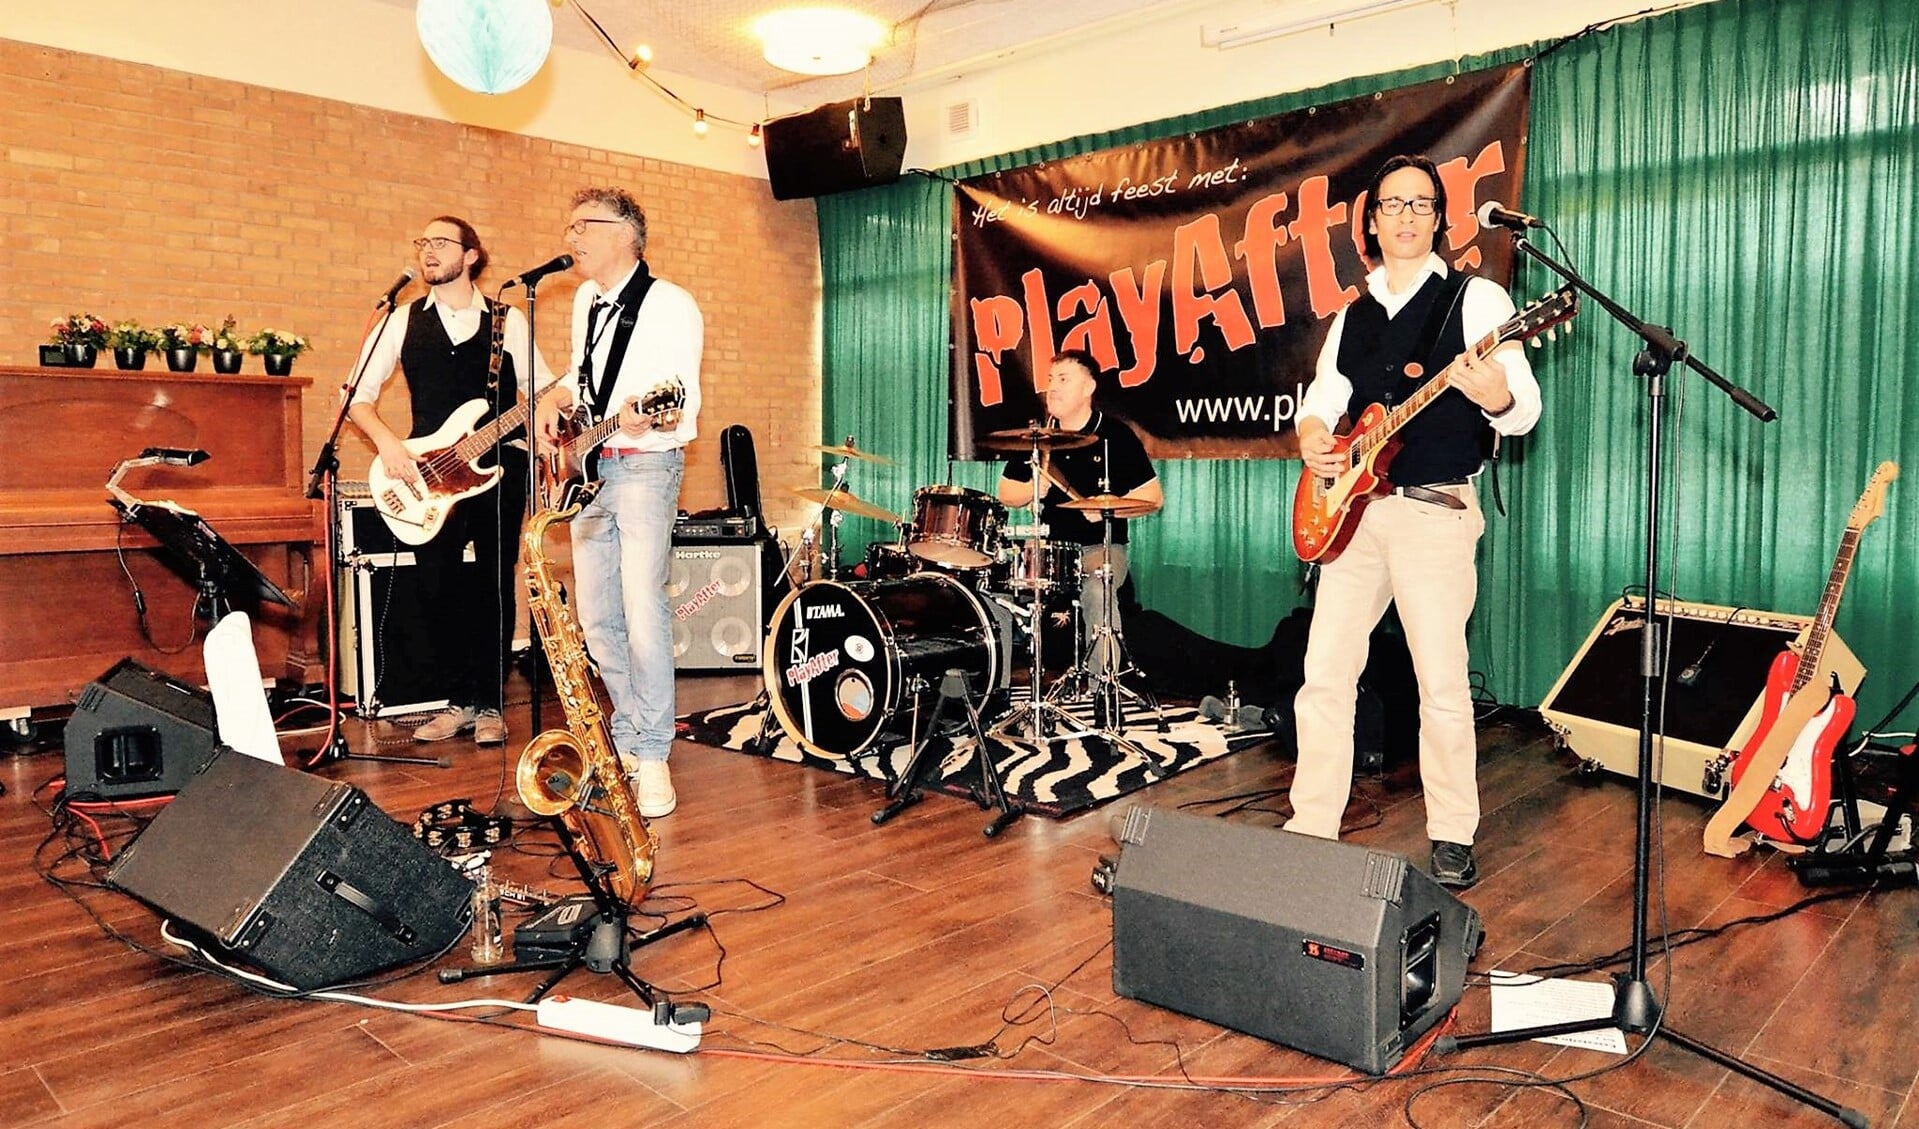 De coverband PlayAfter is een van de twee bands die optreden tijdens de benefietavond (foto: pr).